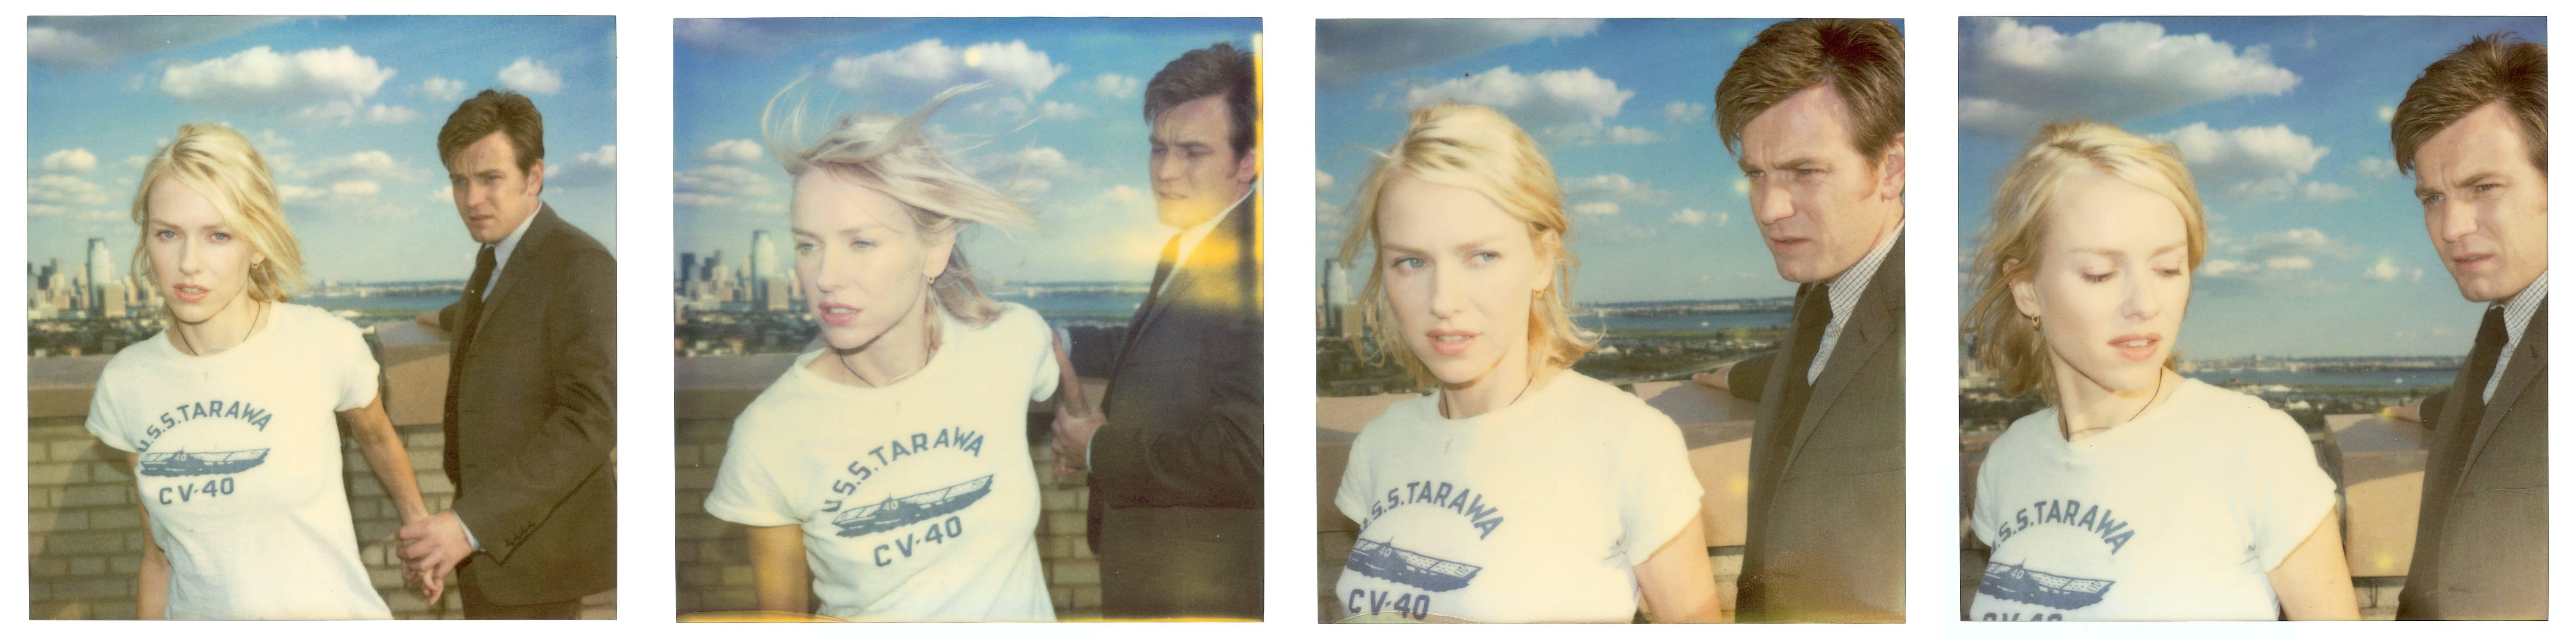 Stefanie Schneider Portrait Photograph – Lila und Sam aus dem Film Stay mit Ewan McGregor, Naomi Watts